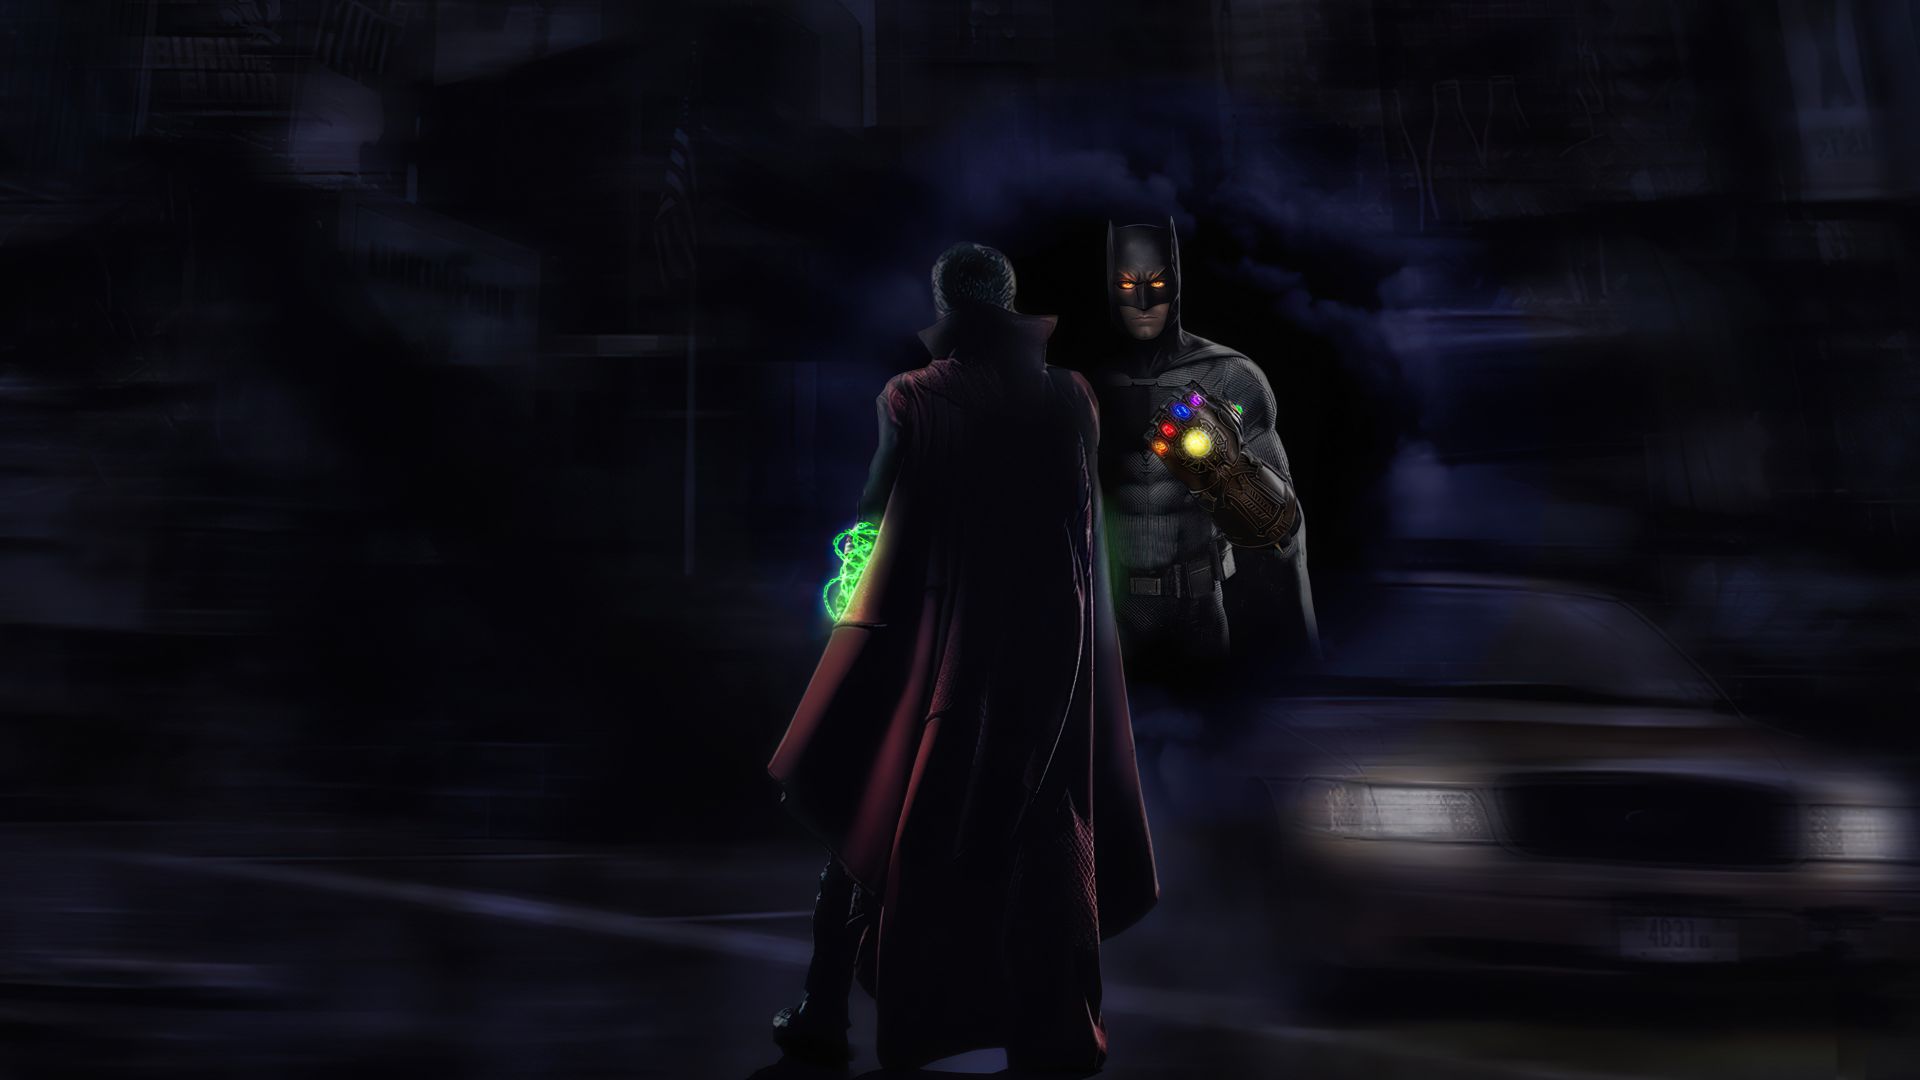 Wallpaper Batman with infinity gauntlet, doctor strange, crossover